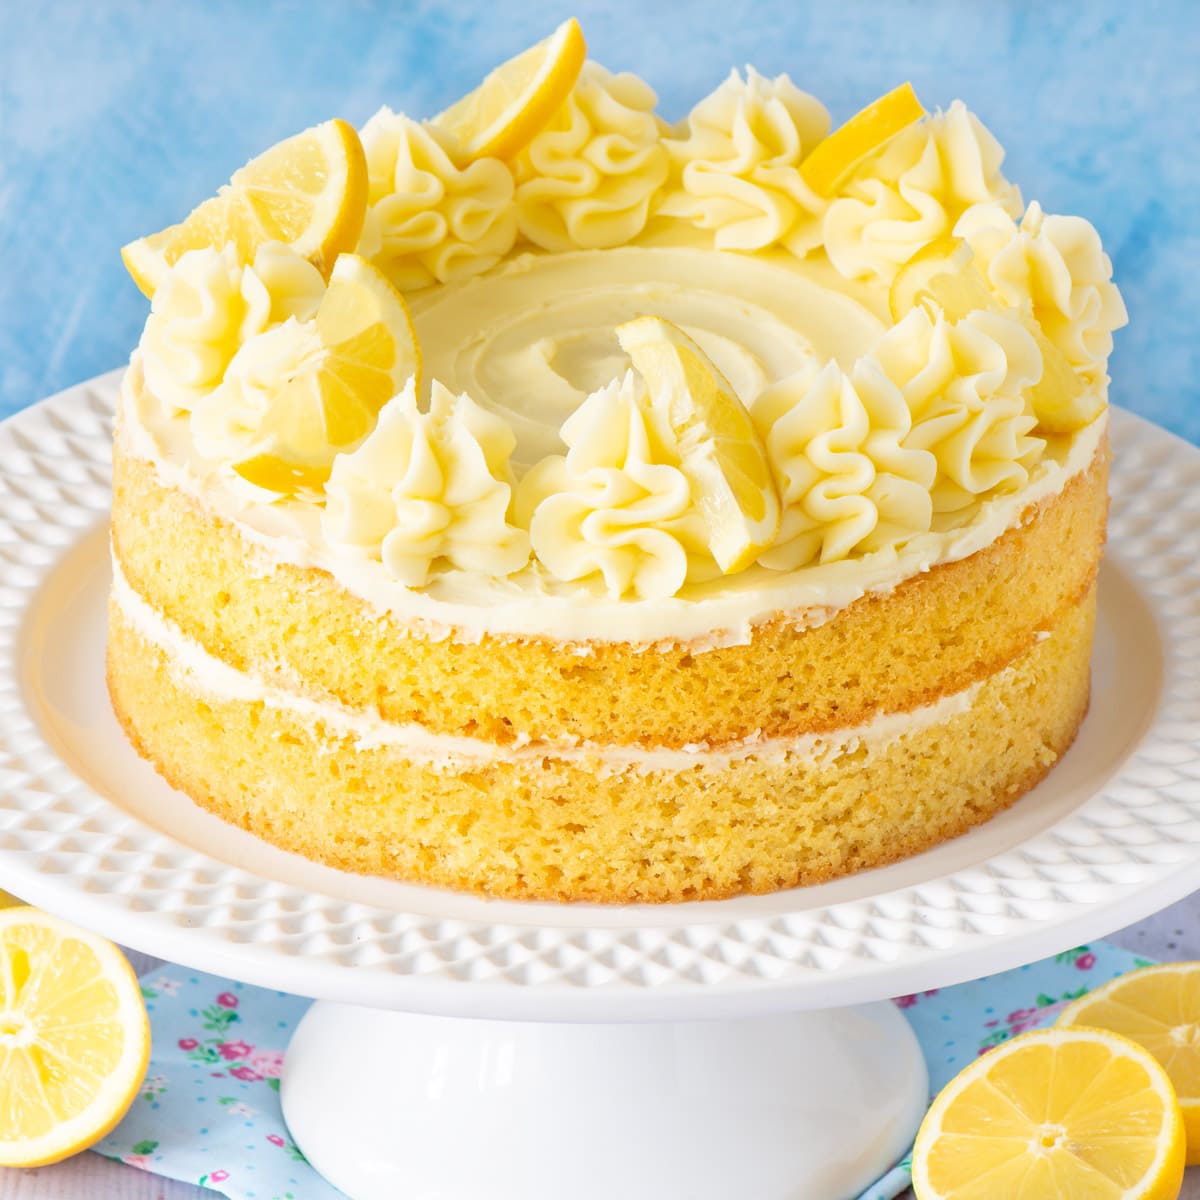 Lemon cake topper with lemon buttercream on a white cake stand.